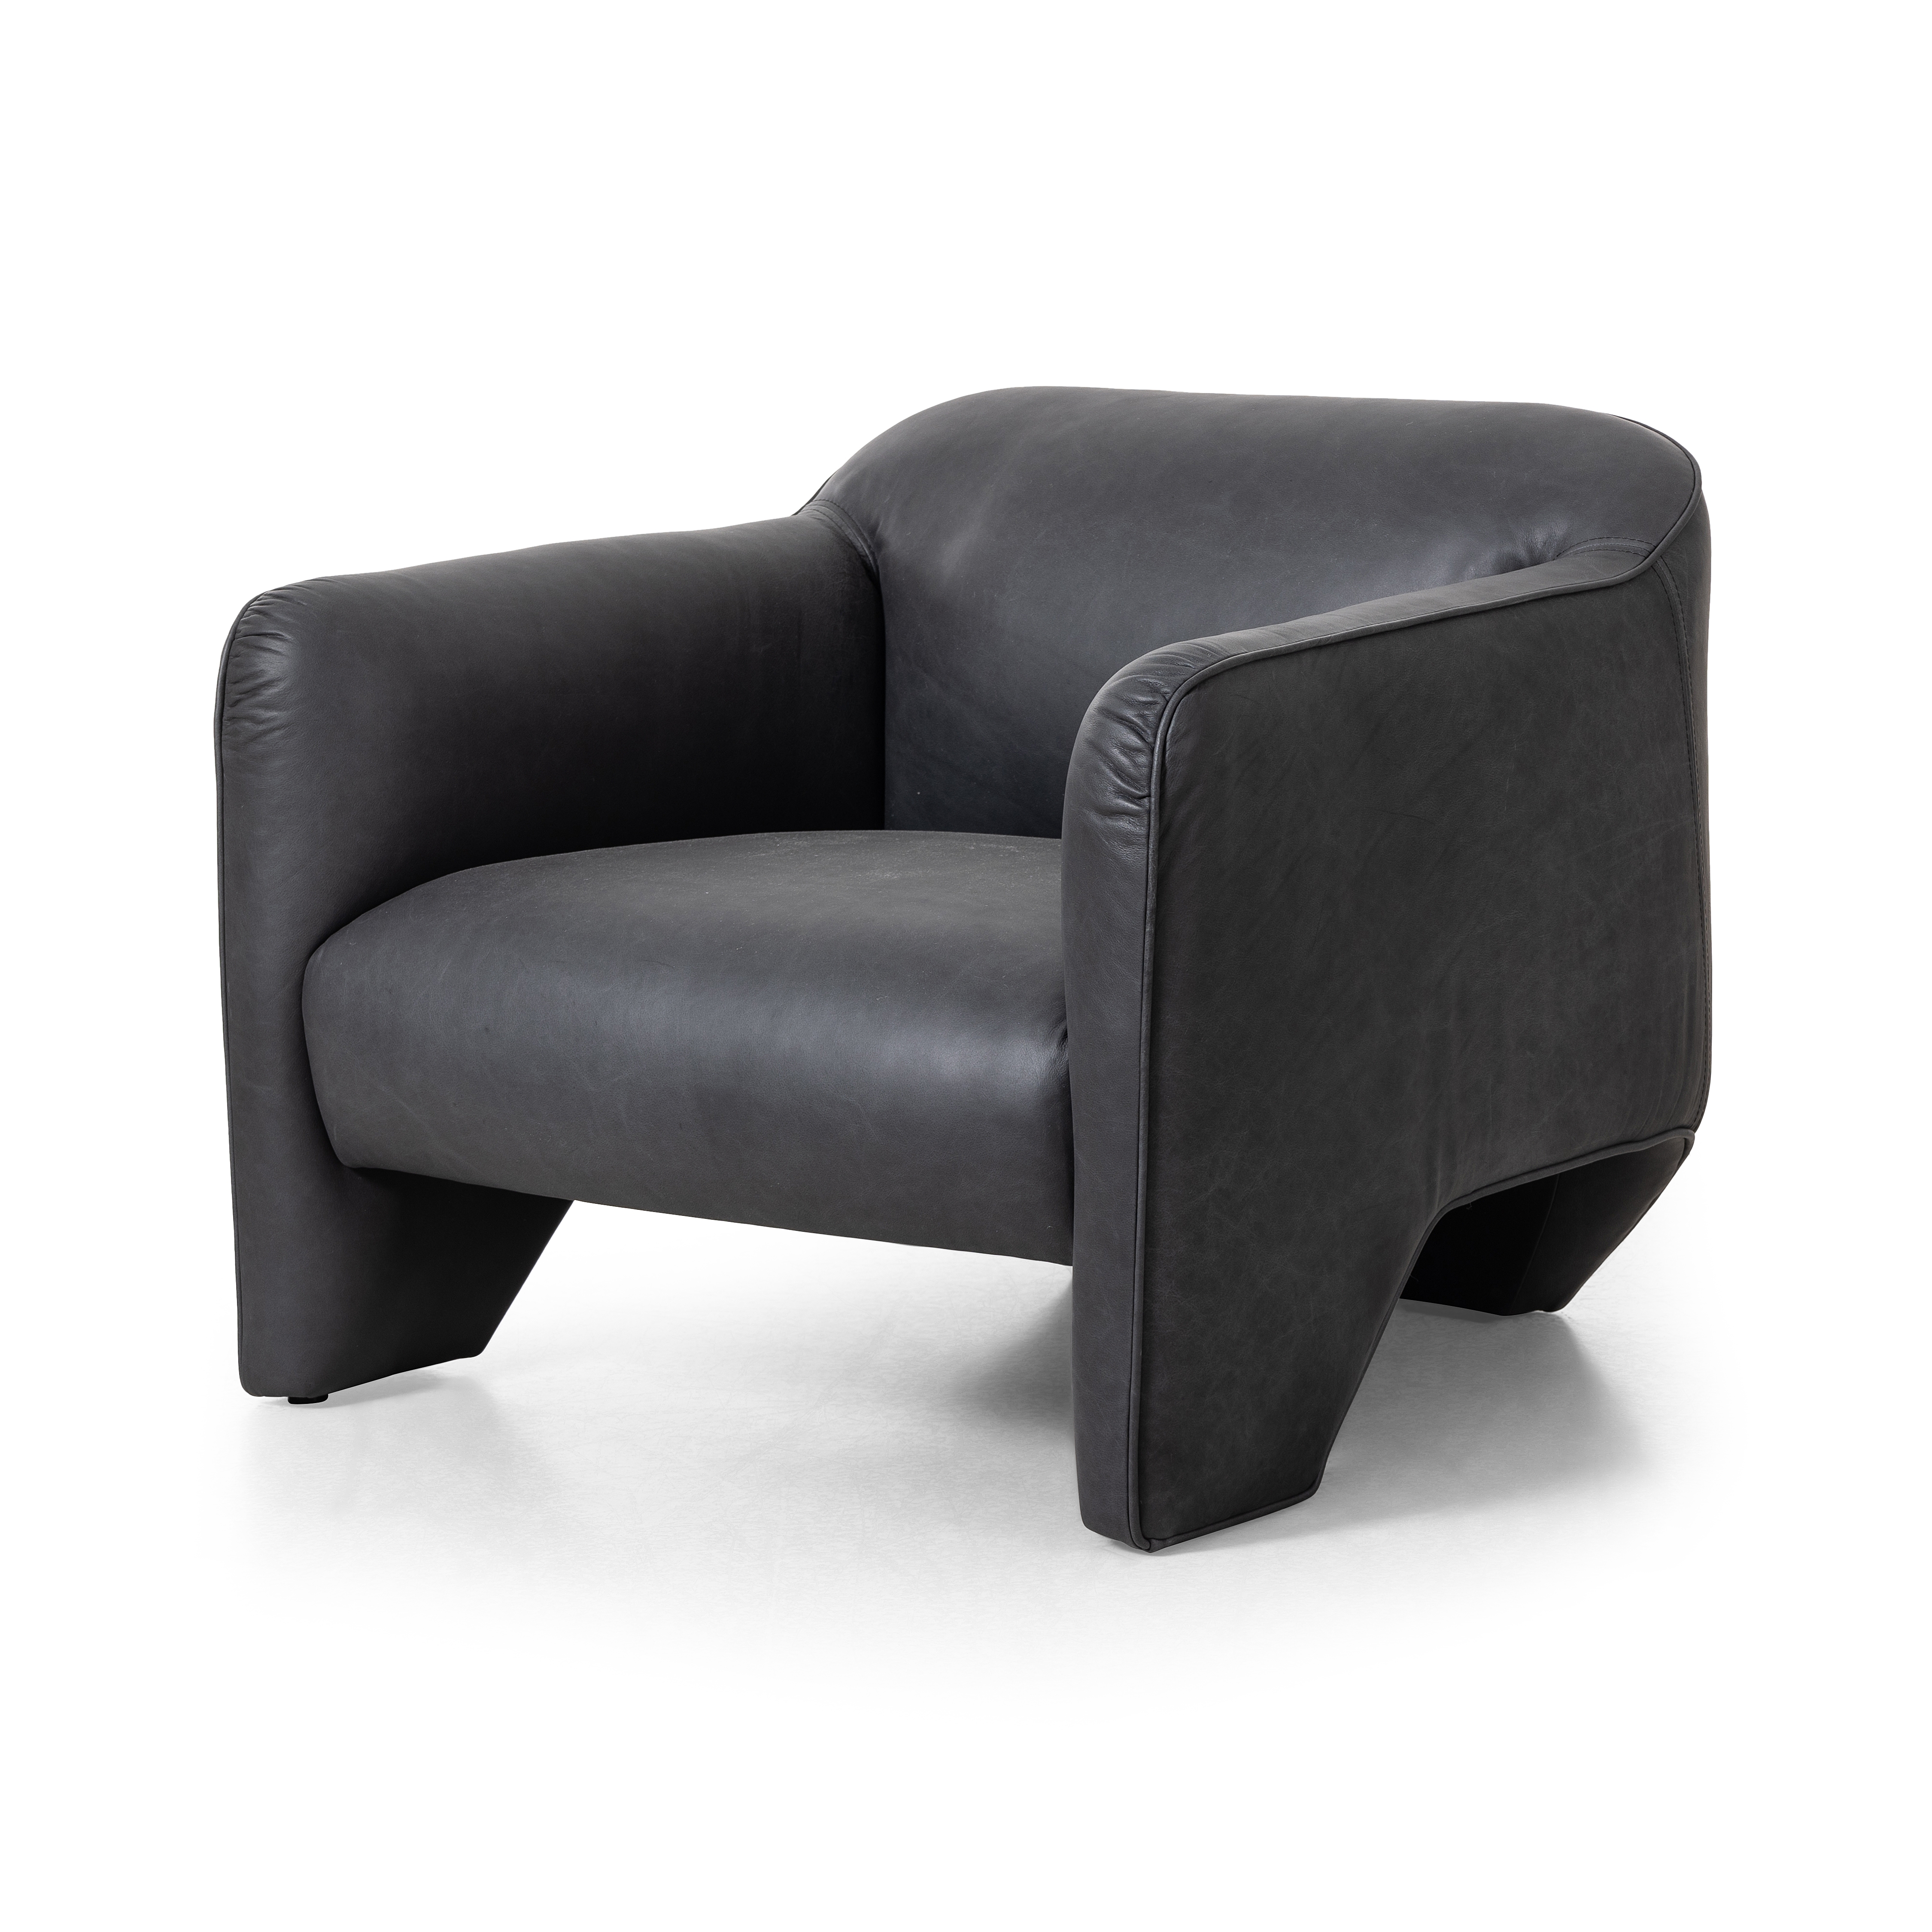 Daria Chair-Eucapel Black - Image 0